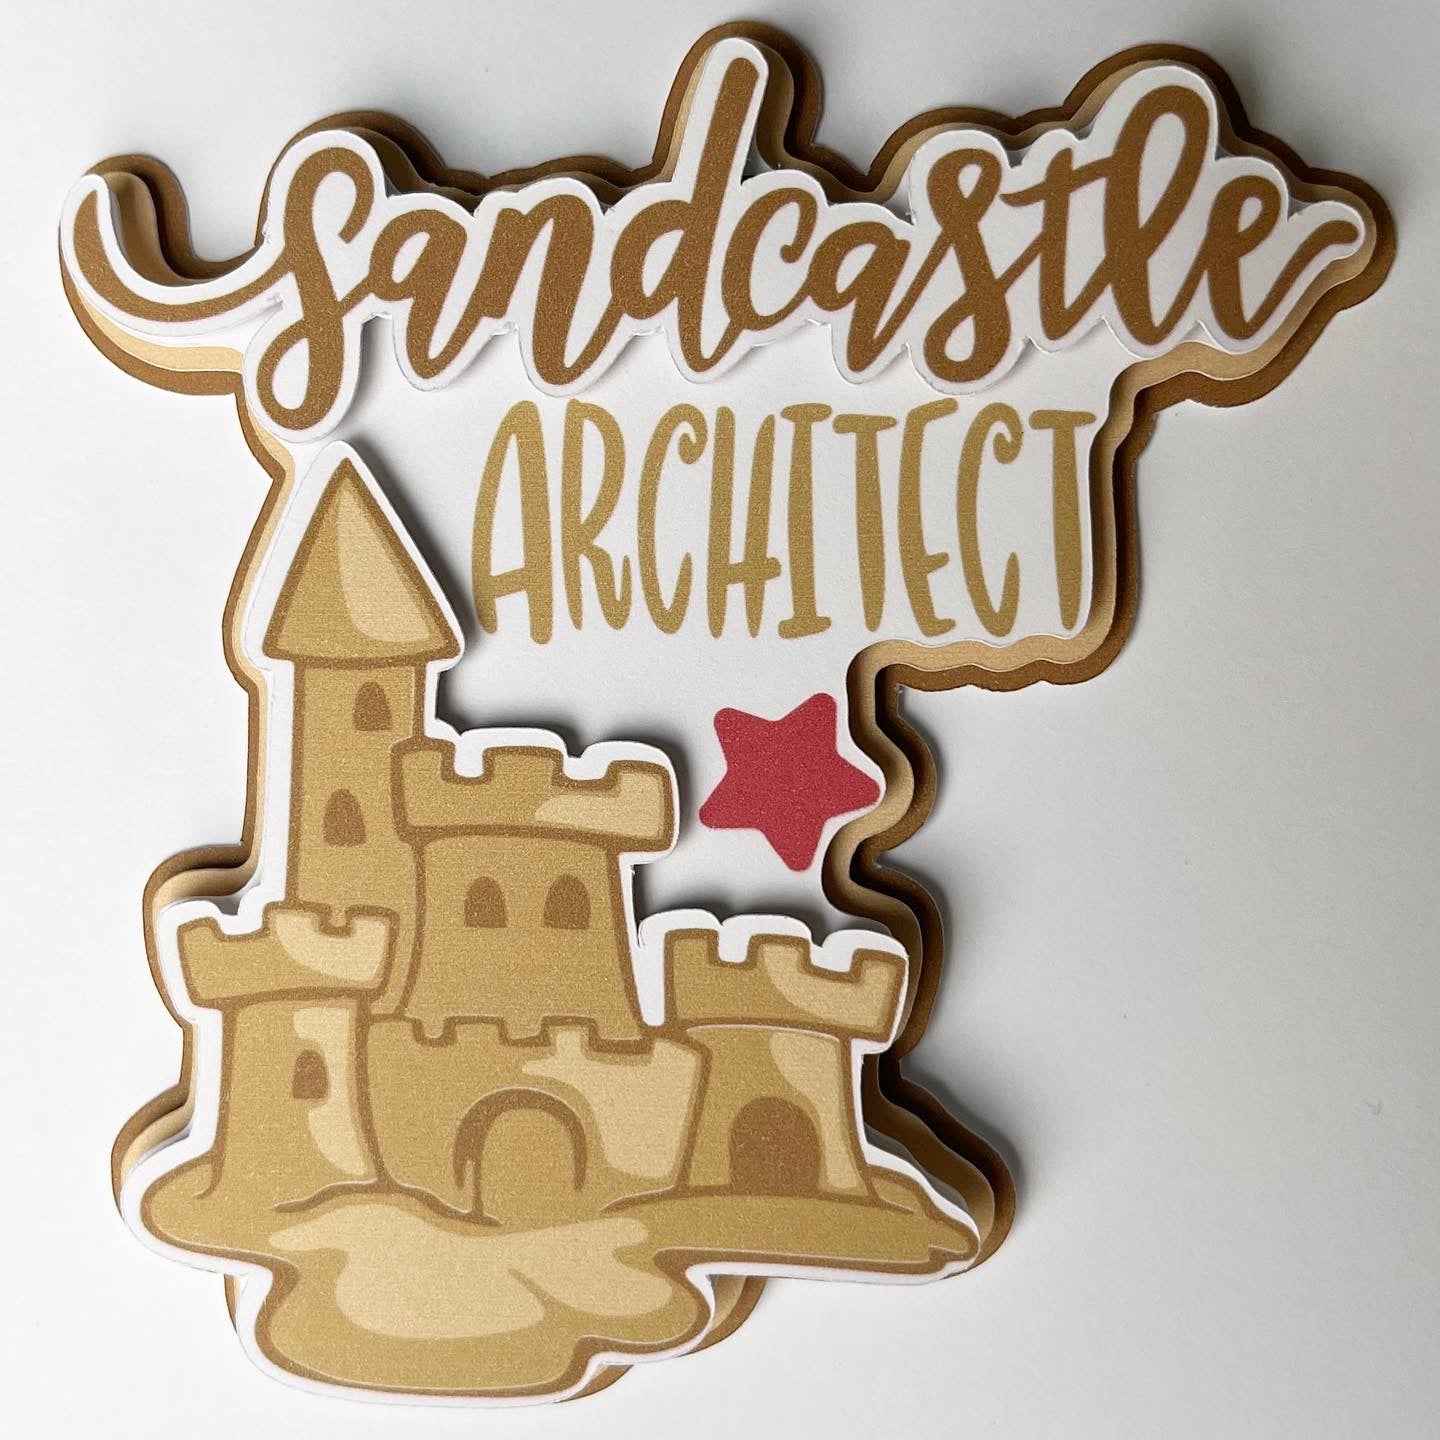 Sandcastle Architect Die Cut